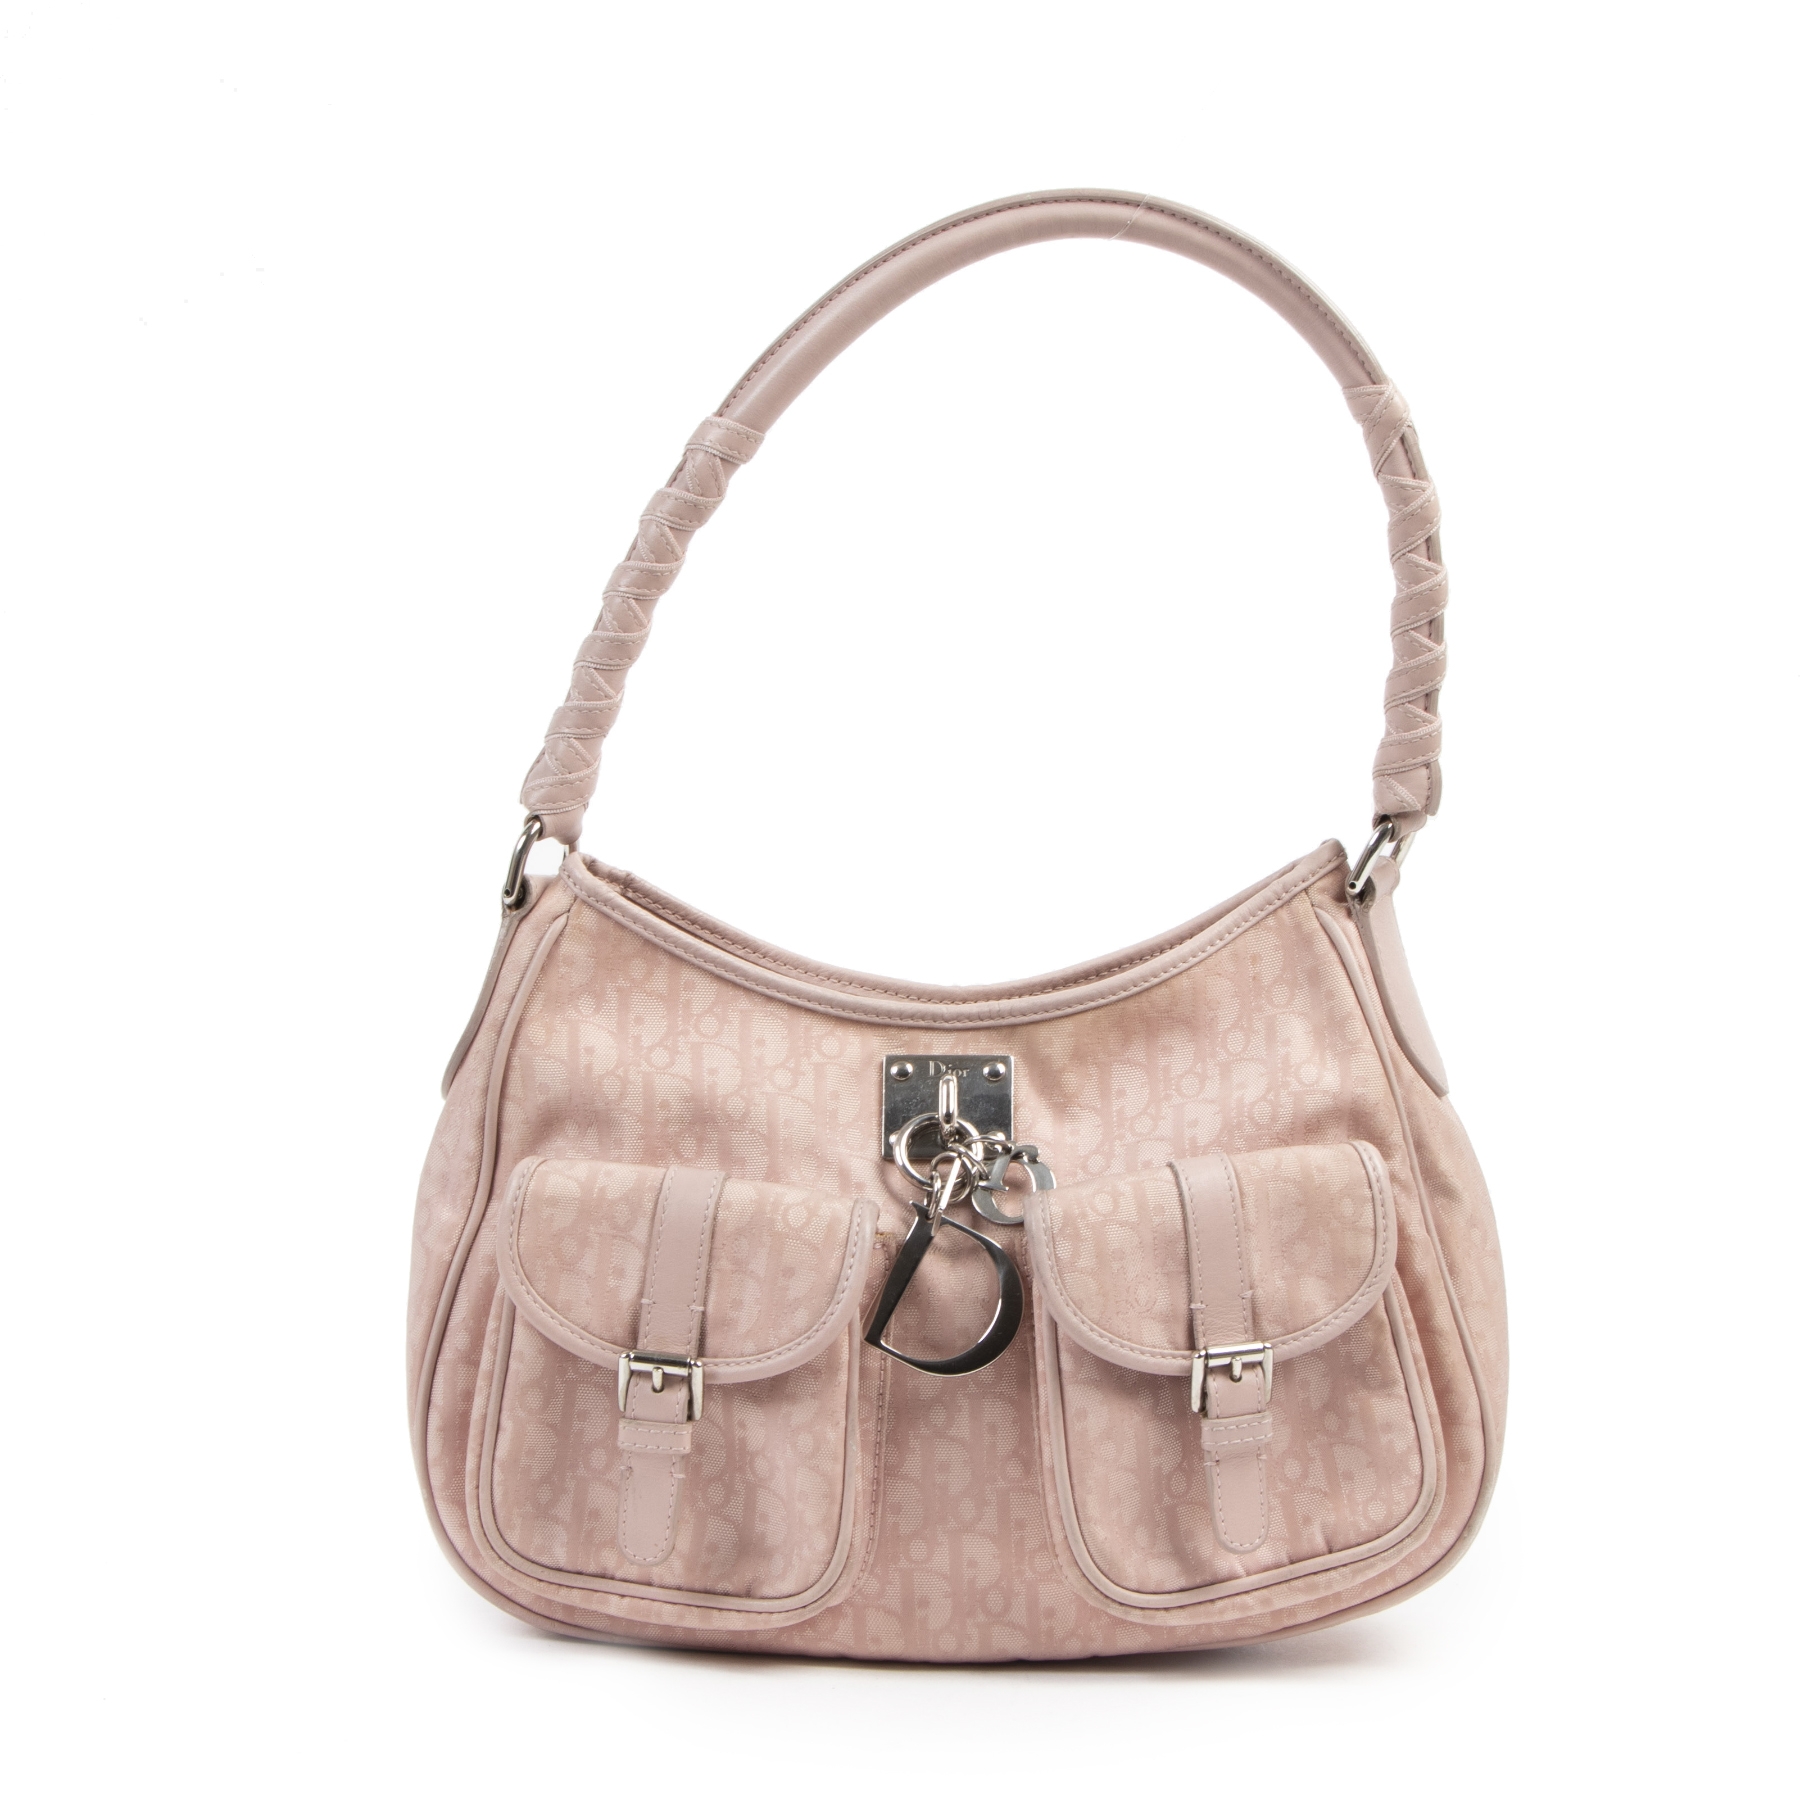 Cra-wallonieShops  Louis Vuitton Porte - hangers 400693 - habits Clothes -  shoulder bag with logo diesel bag rosa pchain